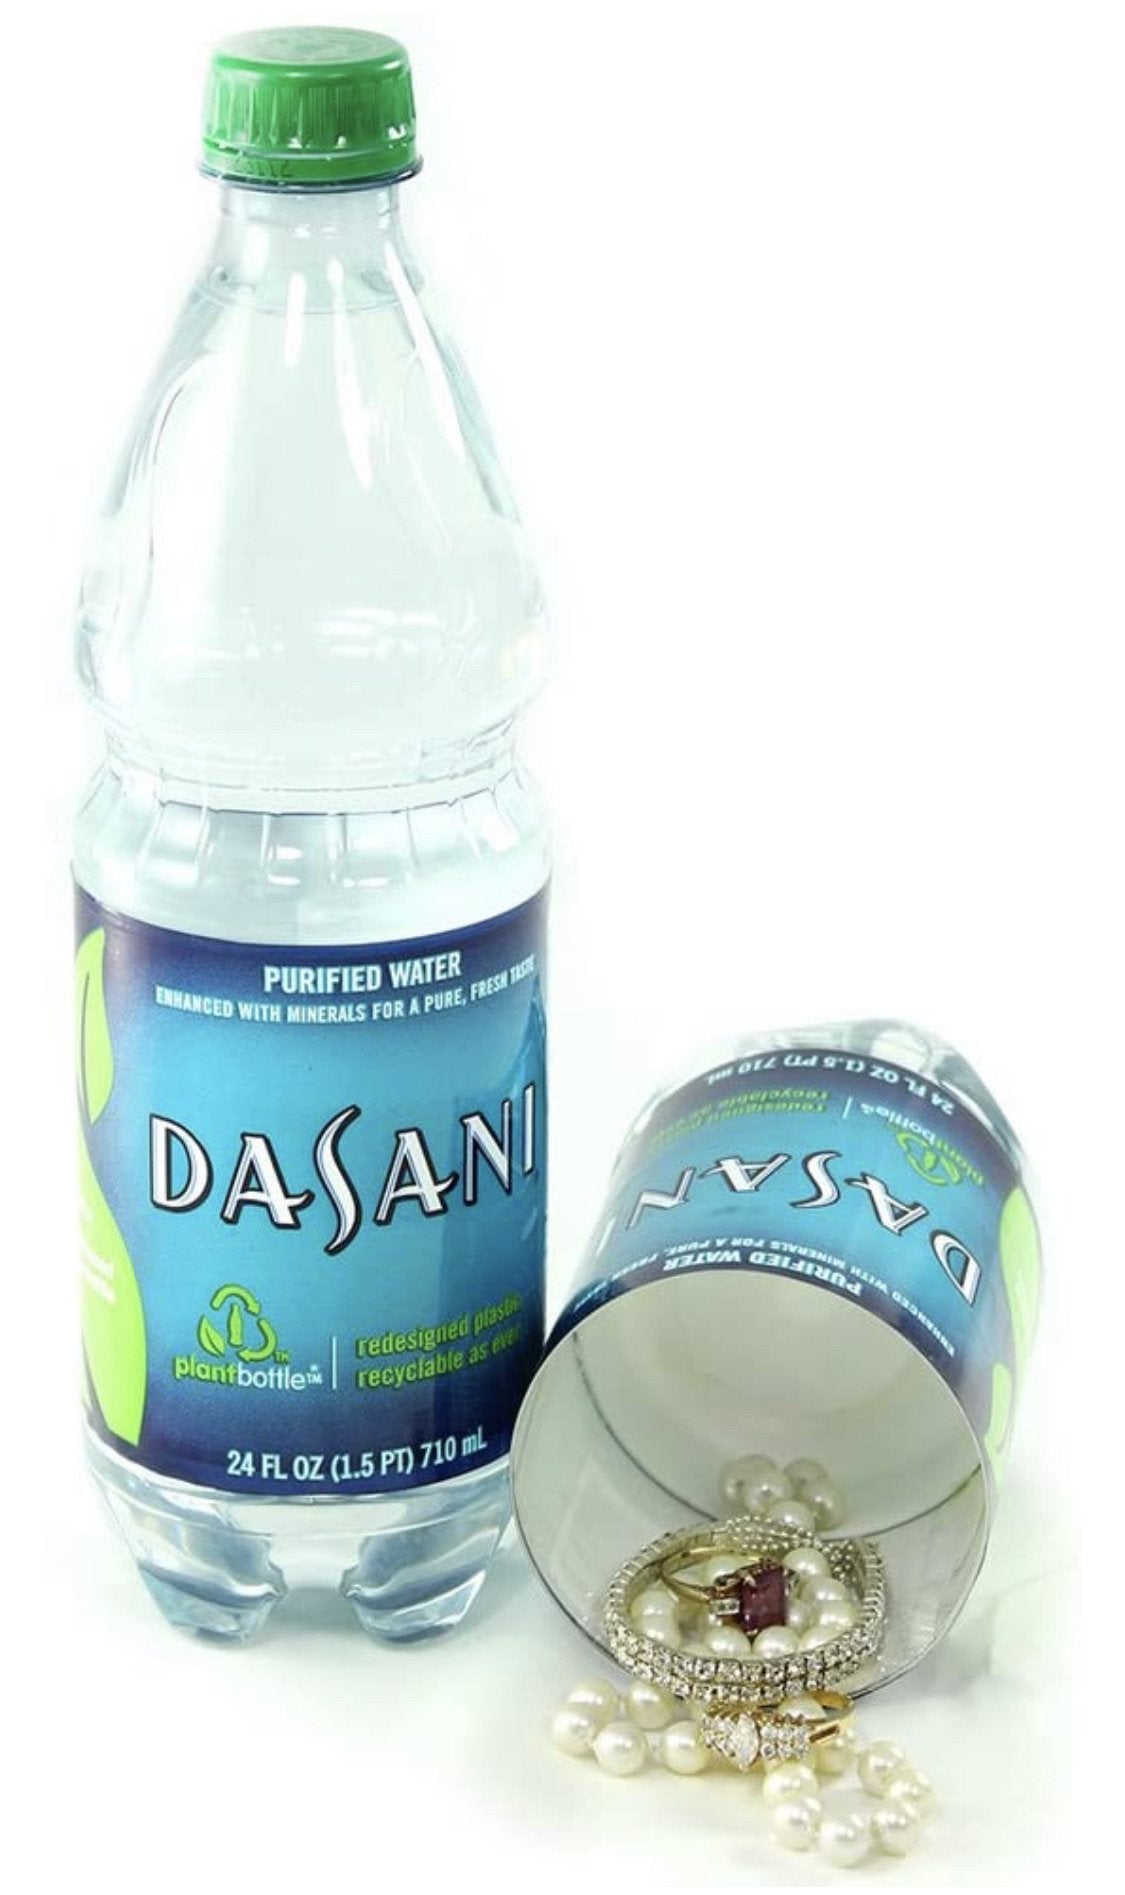 Dasani Concealment Water Bottle Diversion Safe Stash Safe - Concealment Cans